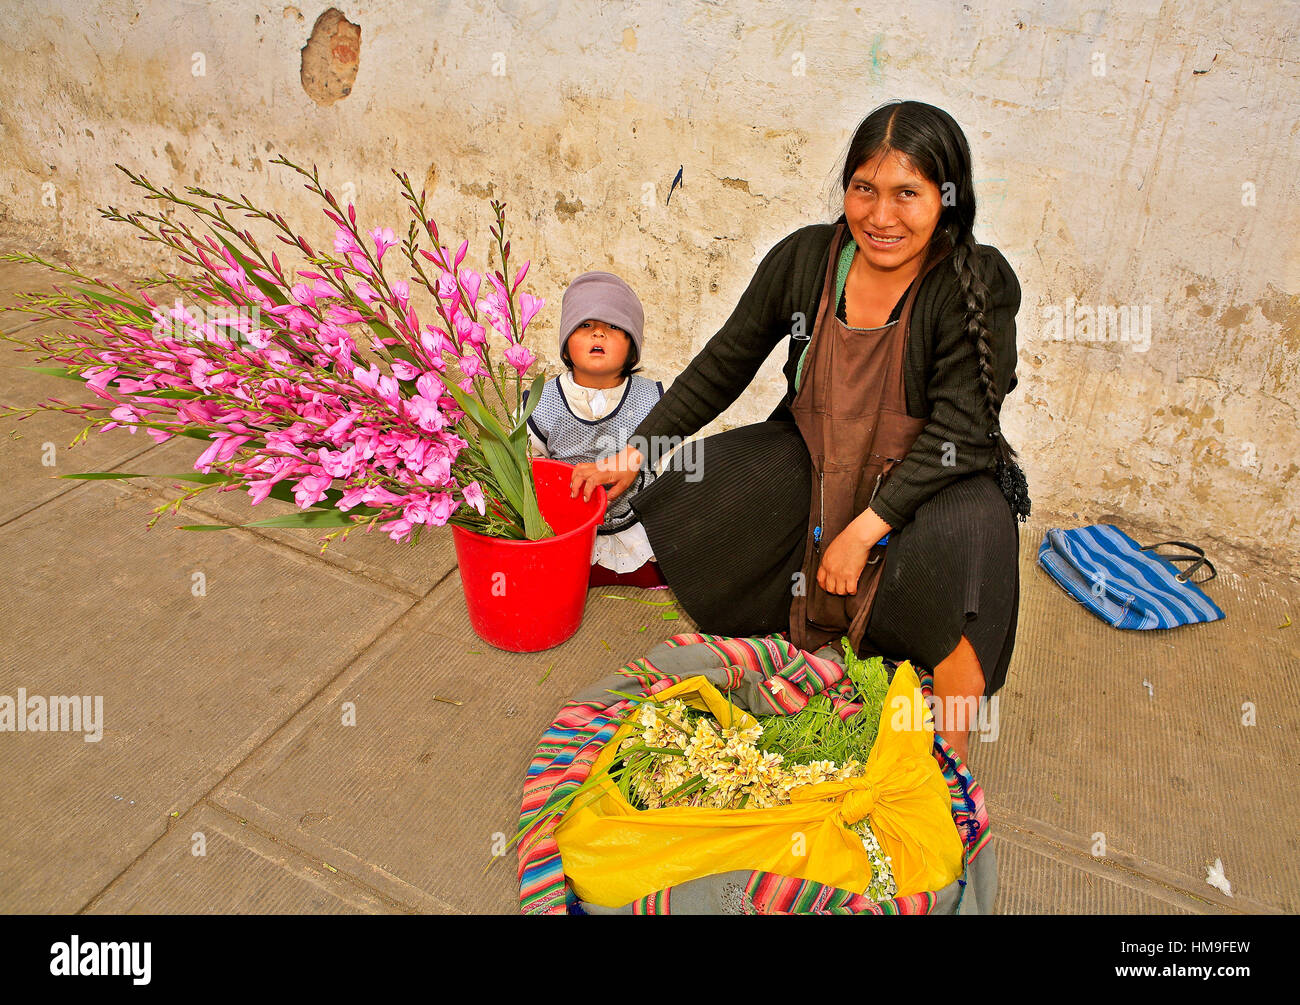 Vendeuse de fleurs avec enfant, Sucre, Bolivie Banque D'Images